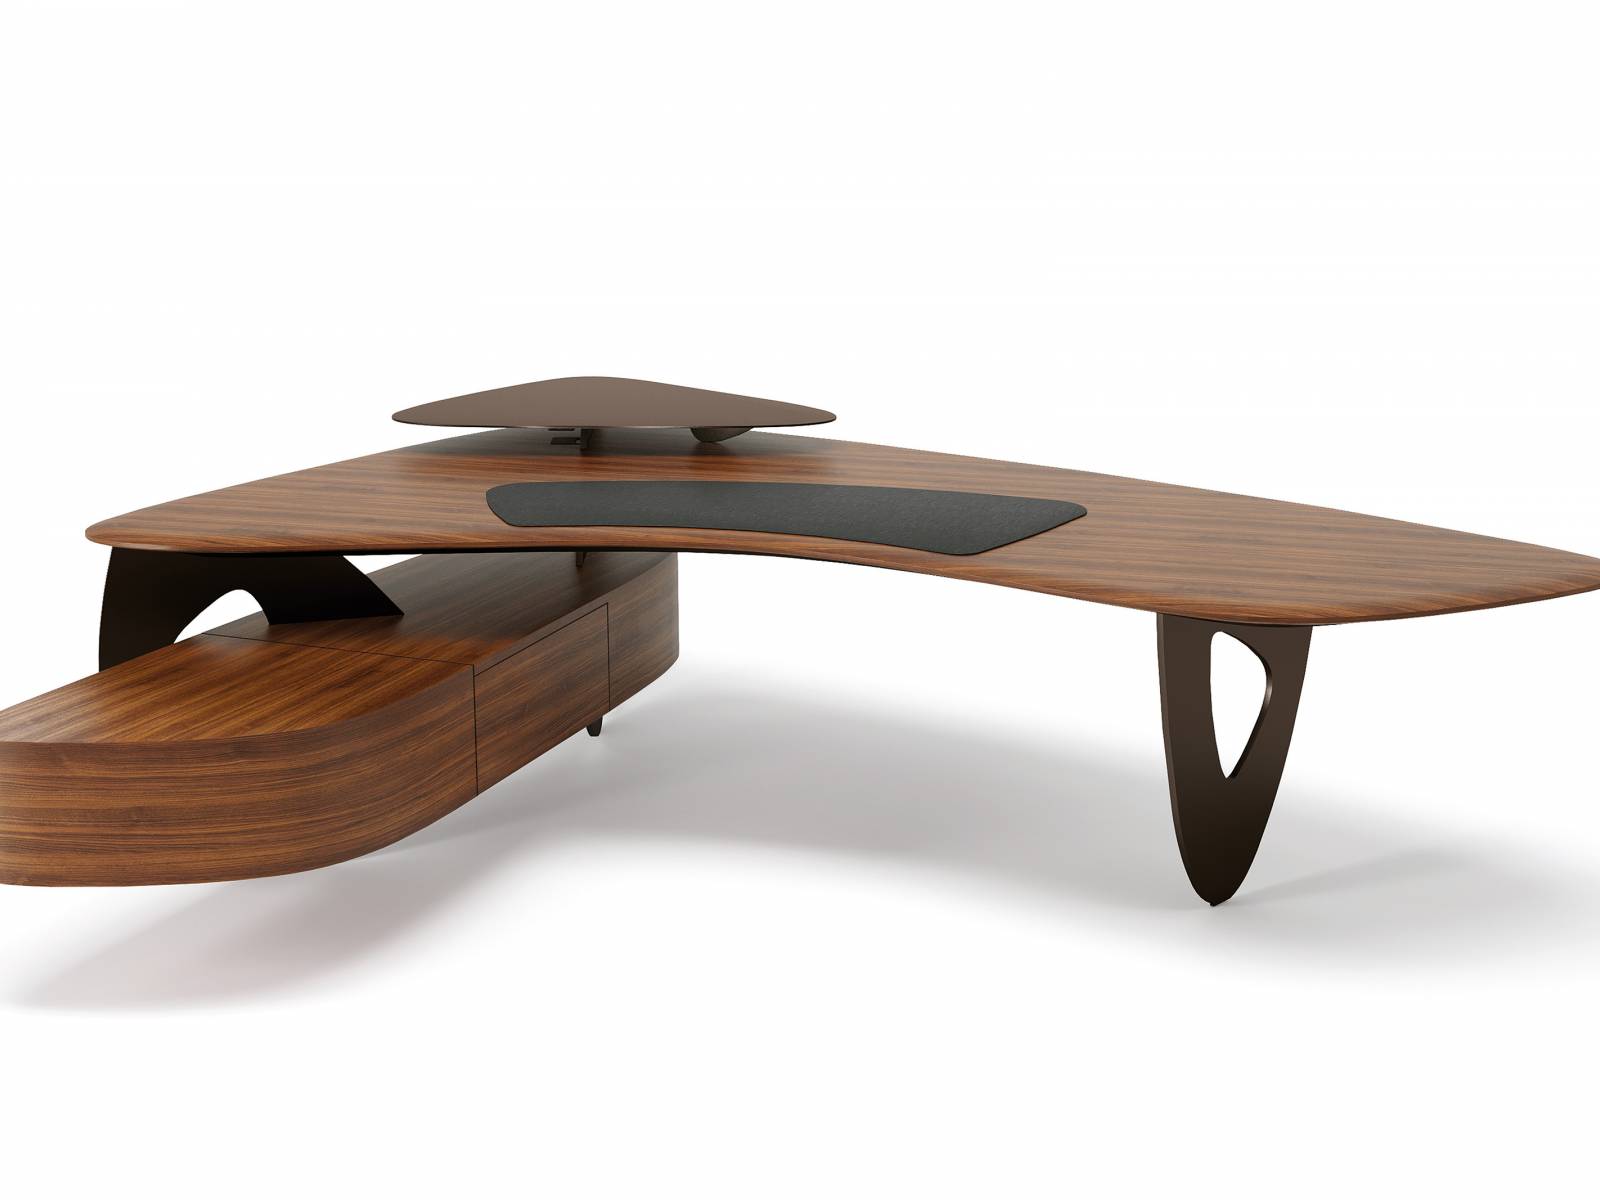 Bürotisch oder Skulptur? Wir meinen: Beides! Der «Tama Desk» von EOOS Design ist ein klares Statement zu Eleganz, Schönheit und Selbstbewusstsein. Aus hochwertigen Materialien gefertigt, mit ausgeklügelten Details ausgestattet und in zwei Grössen erhältlich. Walter Knoll.